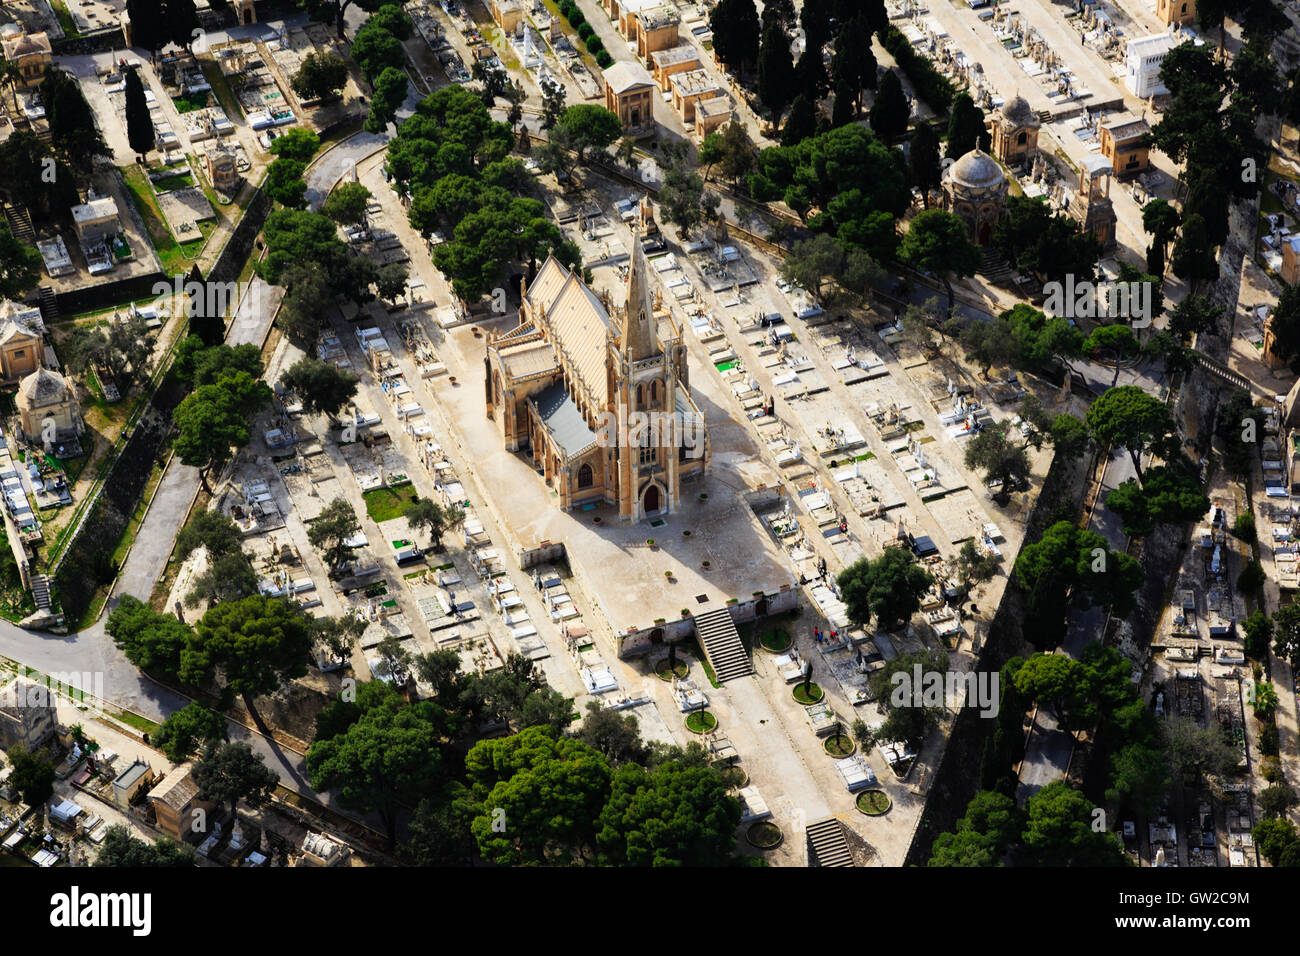 Vista aerea di Santa Maria Addolorata cimitero, Paola, Malta Foto Stock